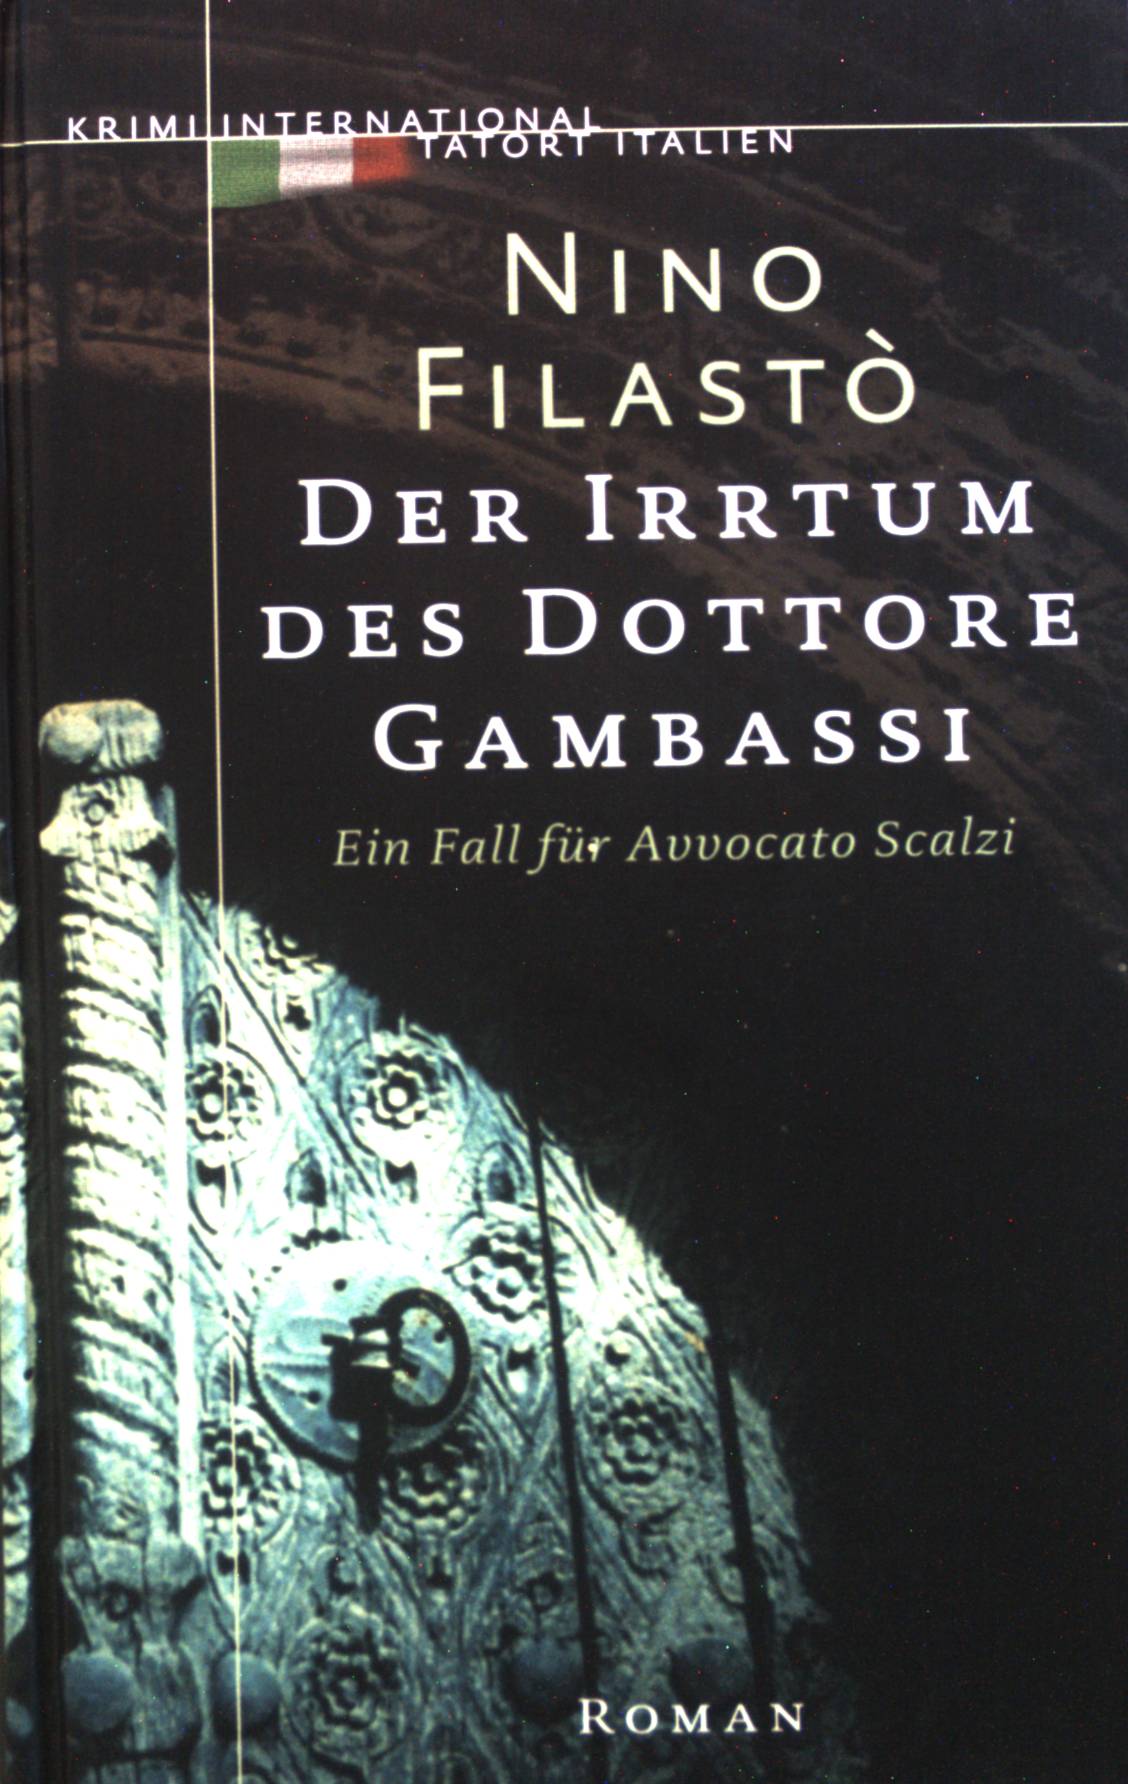 Der Irrtum des Dottore Gambassi : Ein Fall für Avvocato Scalzi. Roman. - Filastò, Nino und Julia Schade